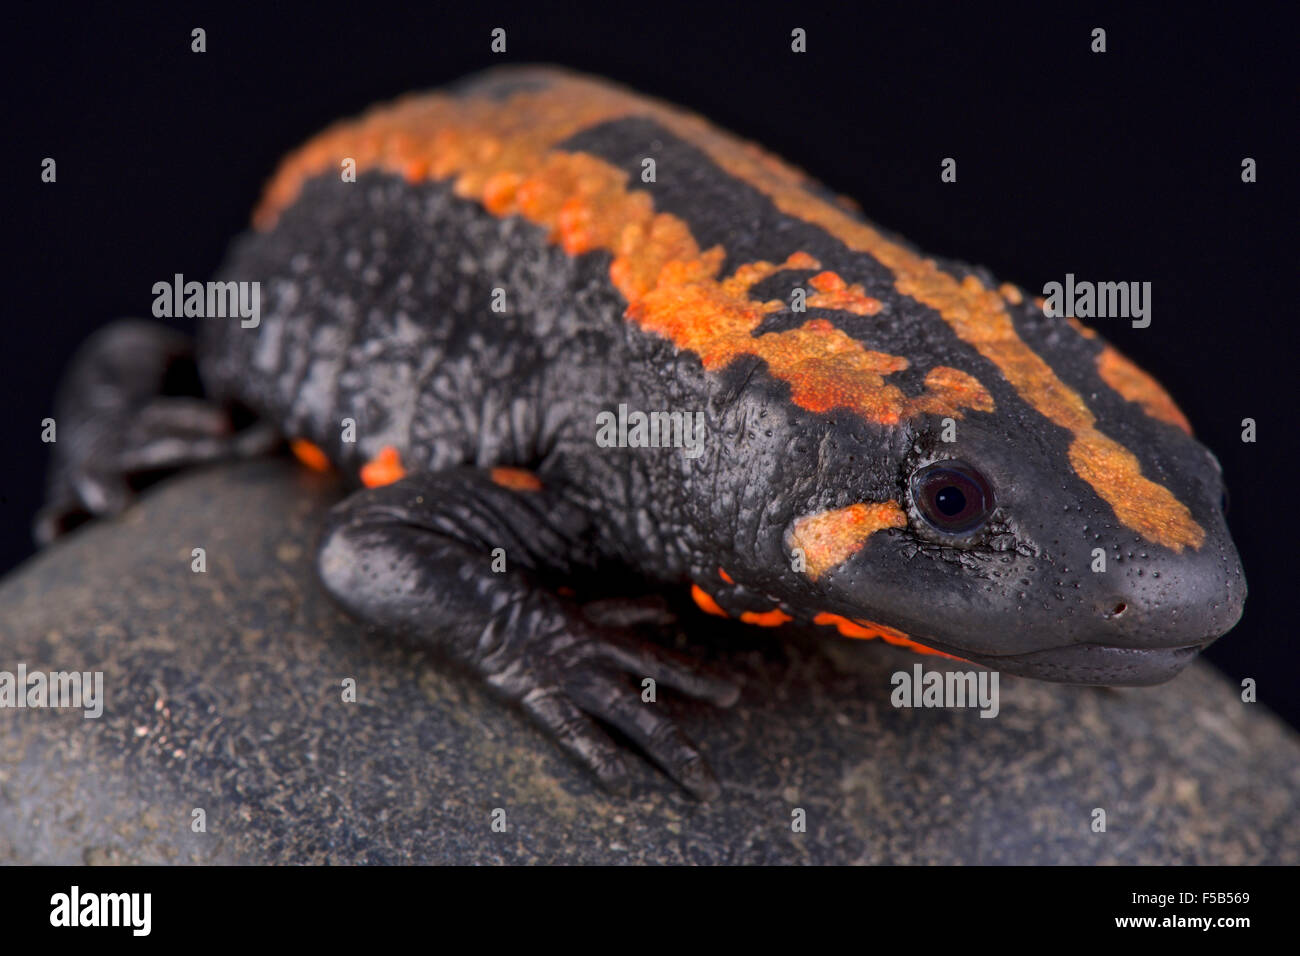 Laos warty newt (Laotriton laoensis) Stock Photo